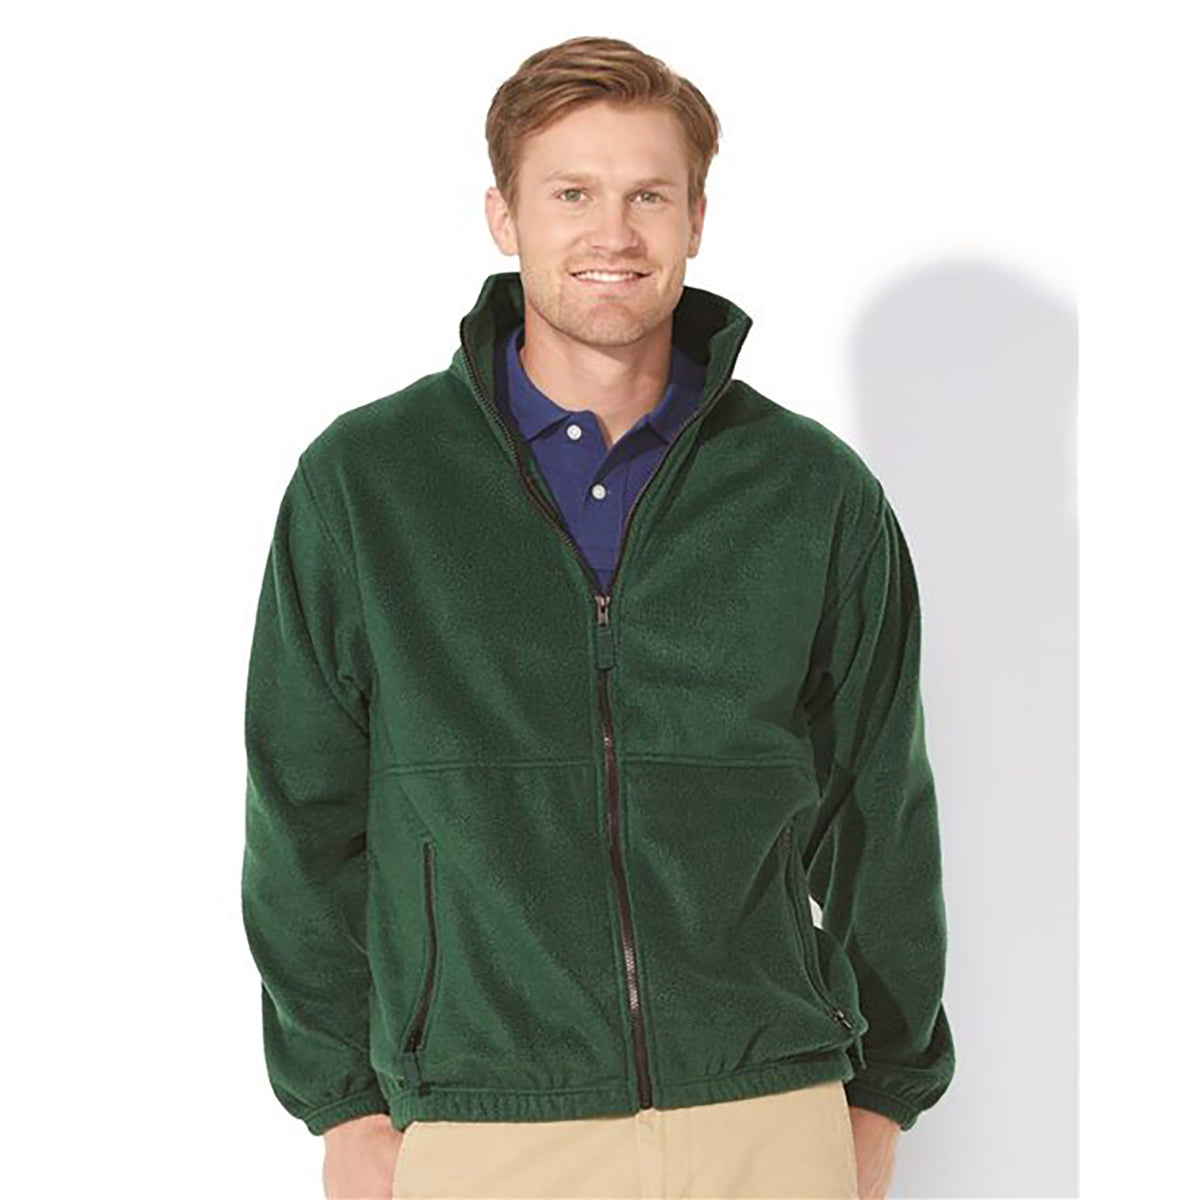 TCLAD Sierra Pacific - Fleece Full-Zip Jacket